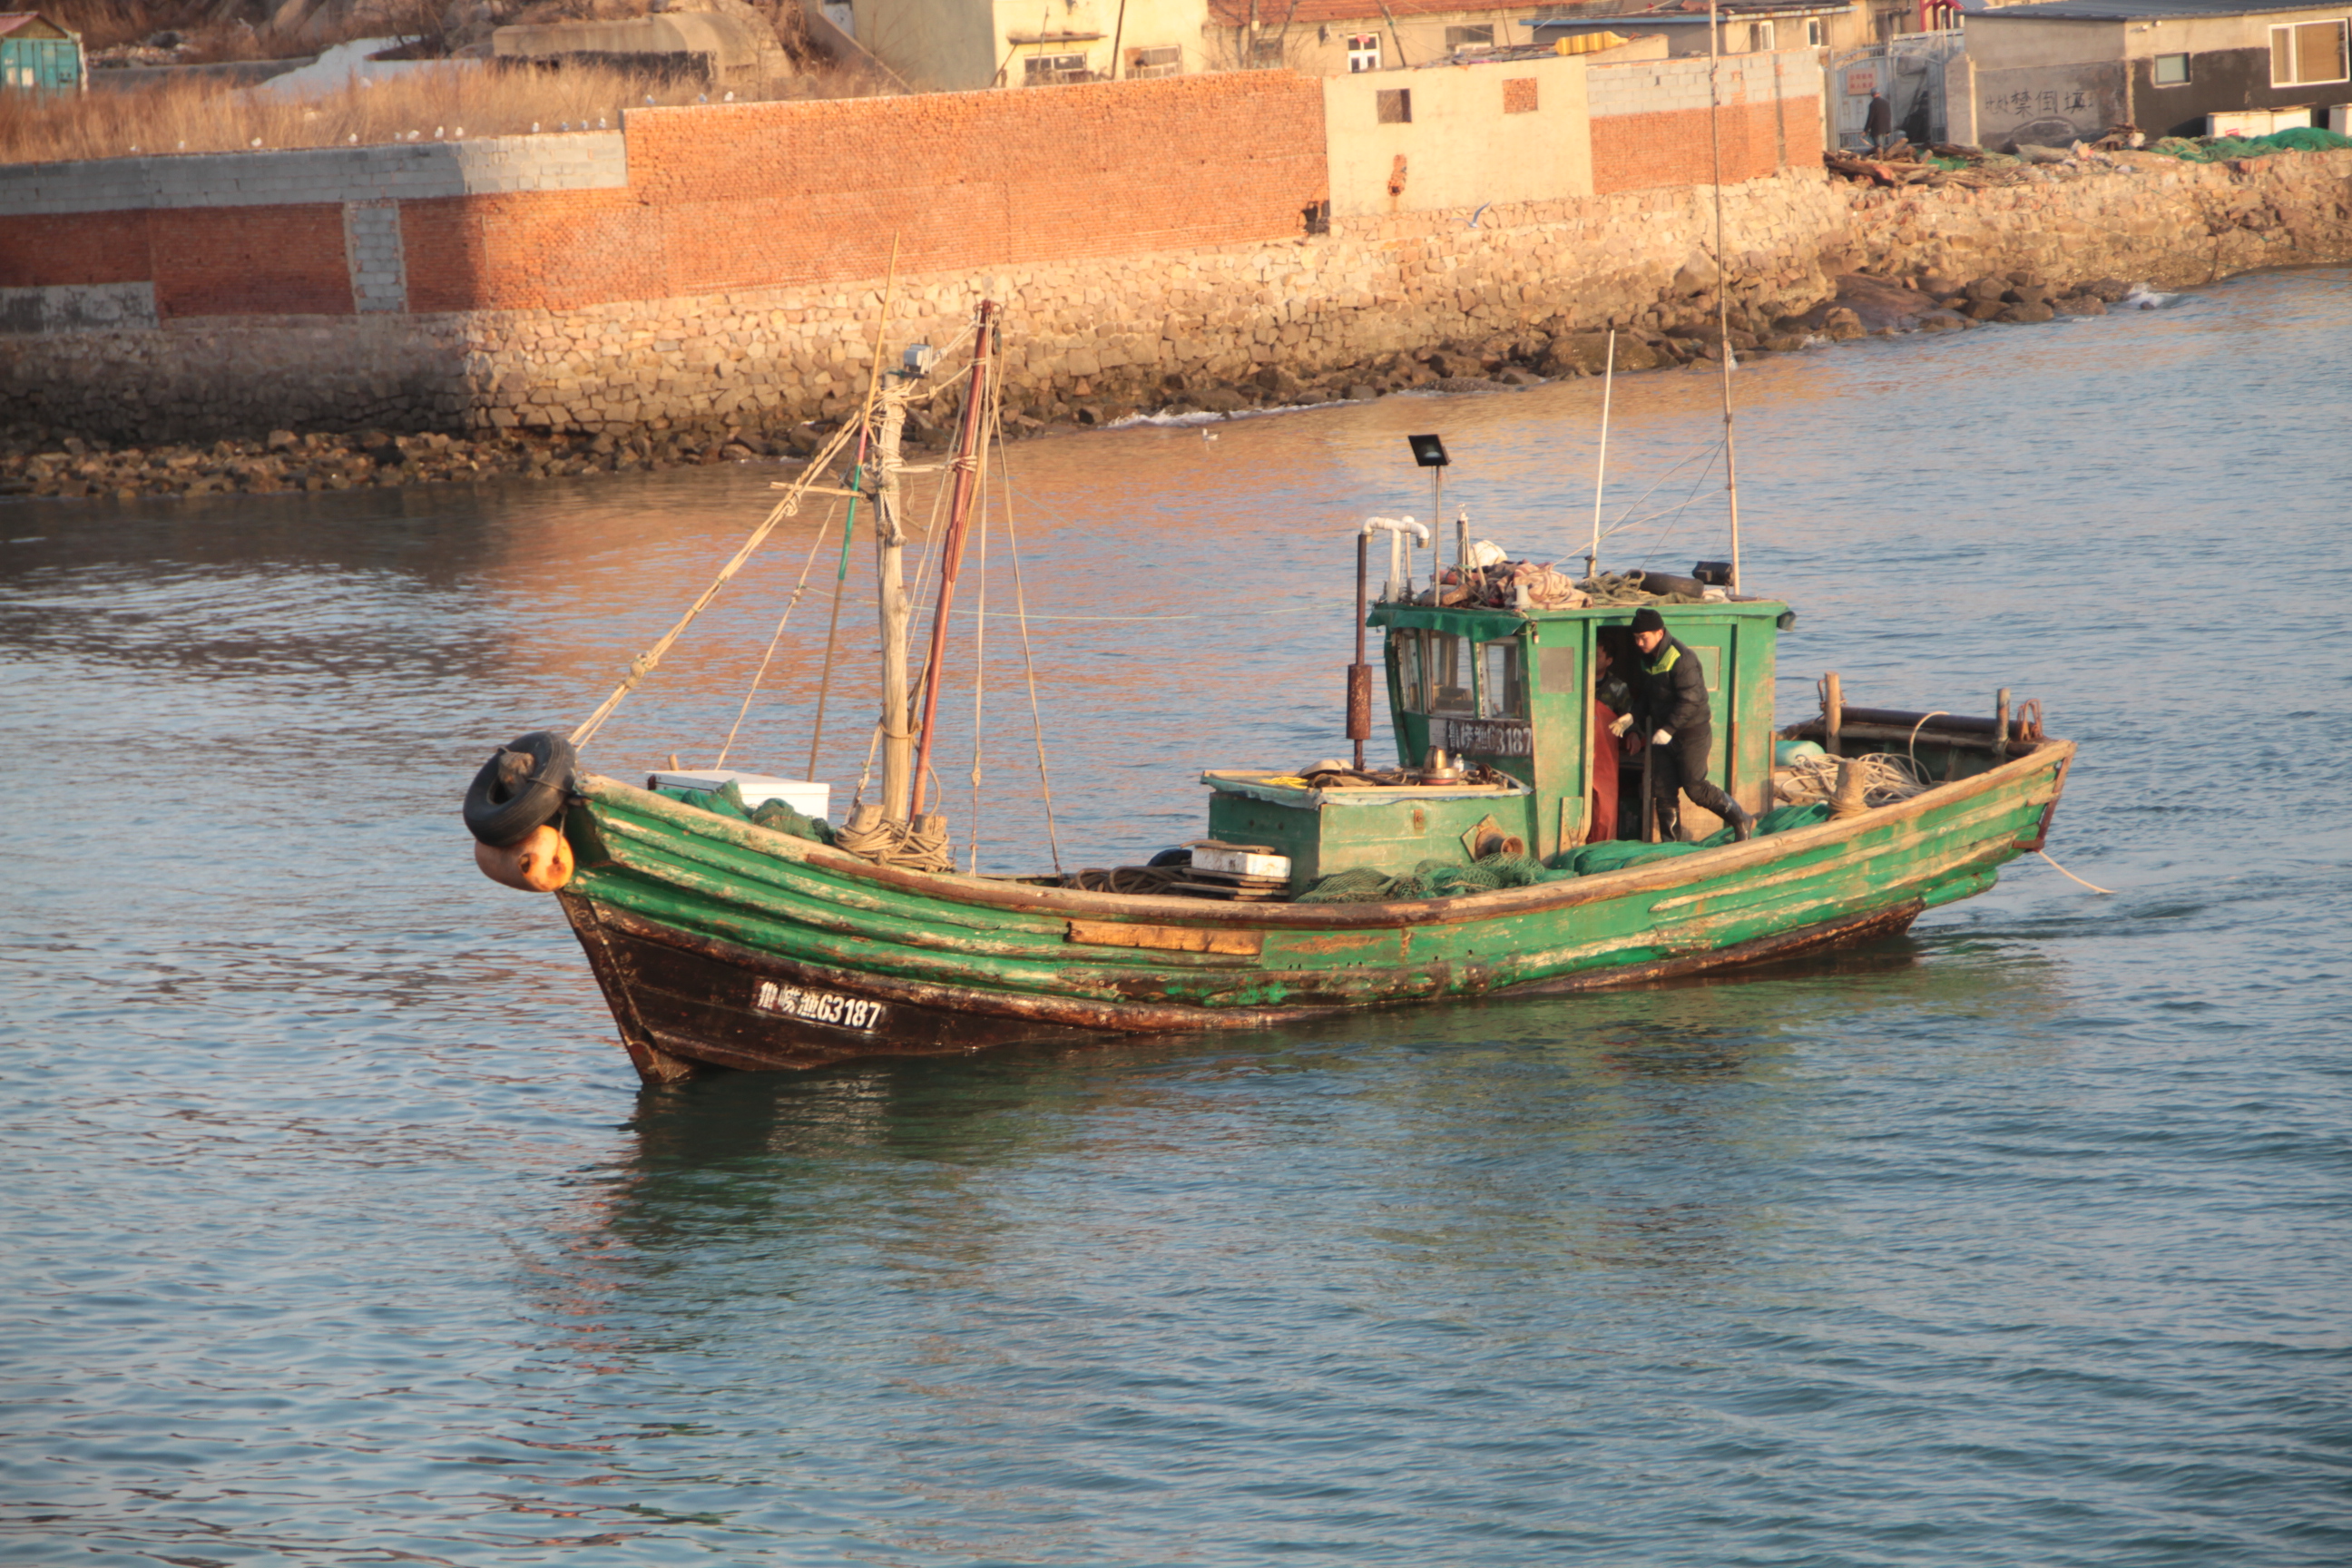 距离青岛近海23海里左右,本地的小渔船就开始全面出海捕鱼